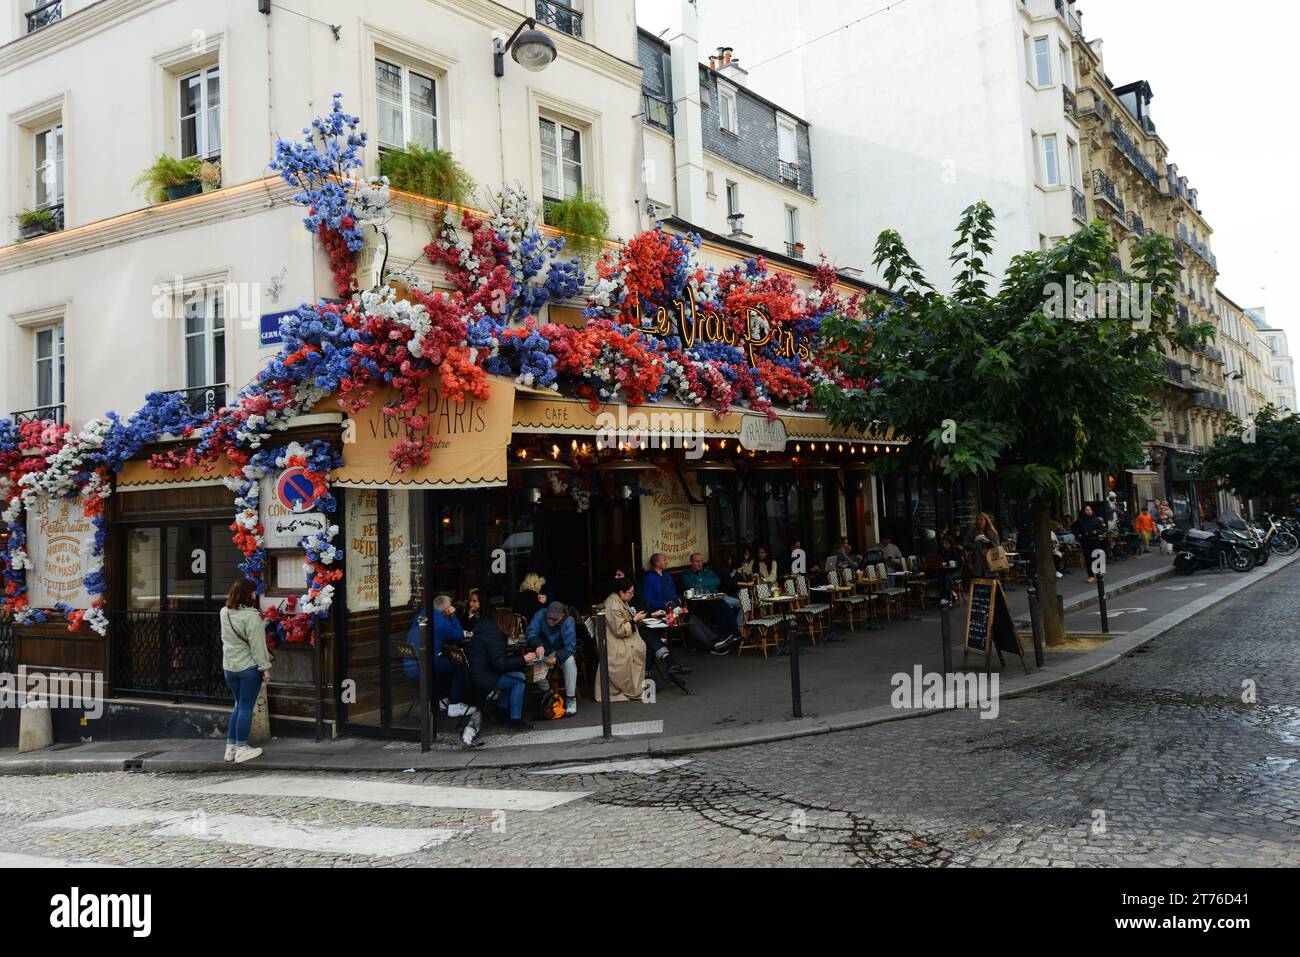 The vibrant Le vrai Paris on Rue des Abbesses in Montmartre, Paris. Stock Photo